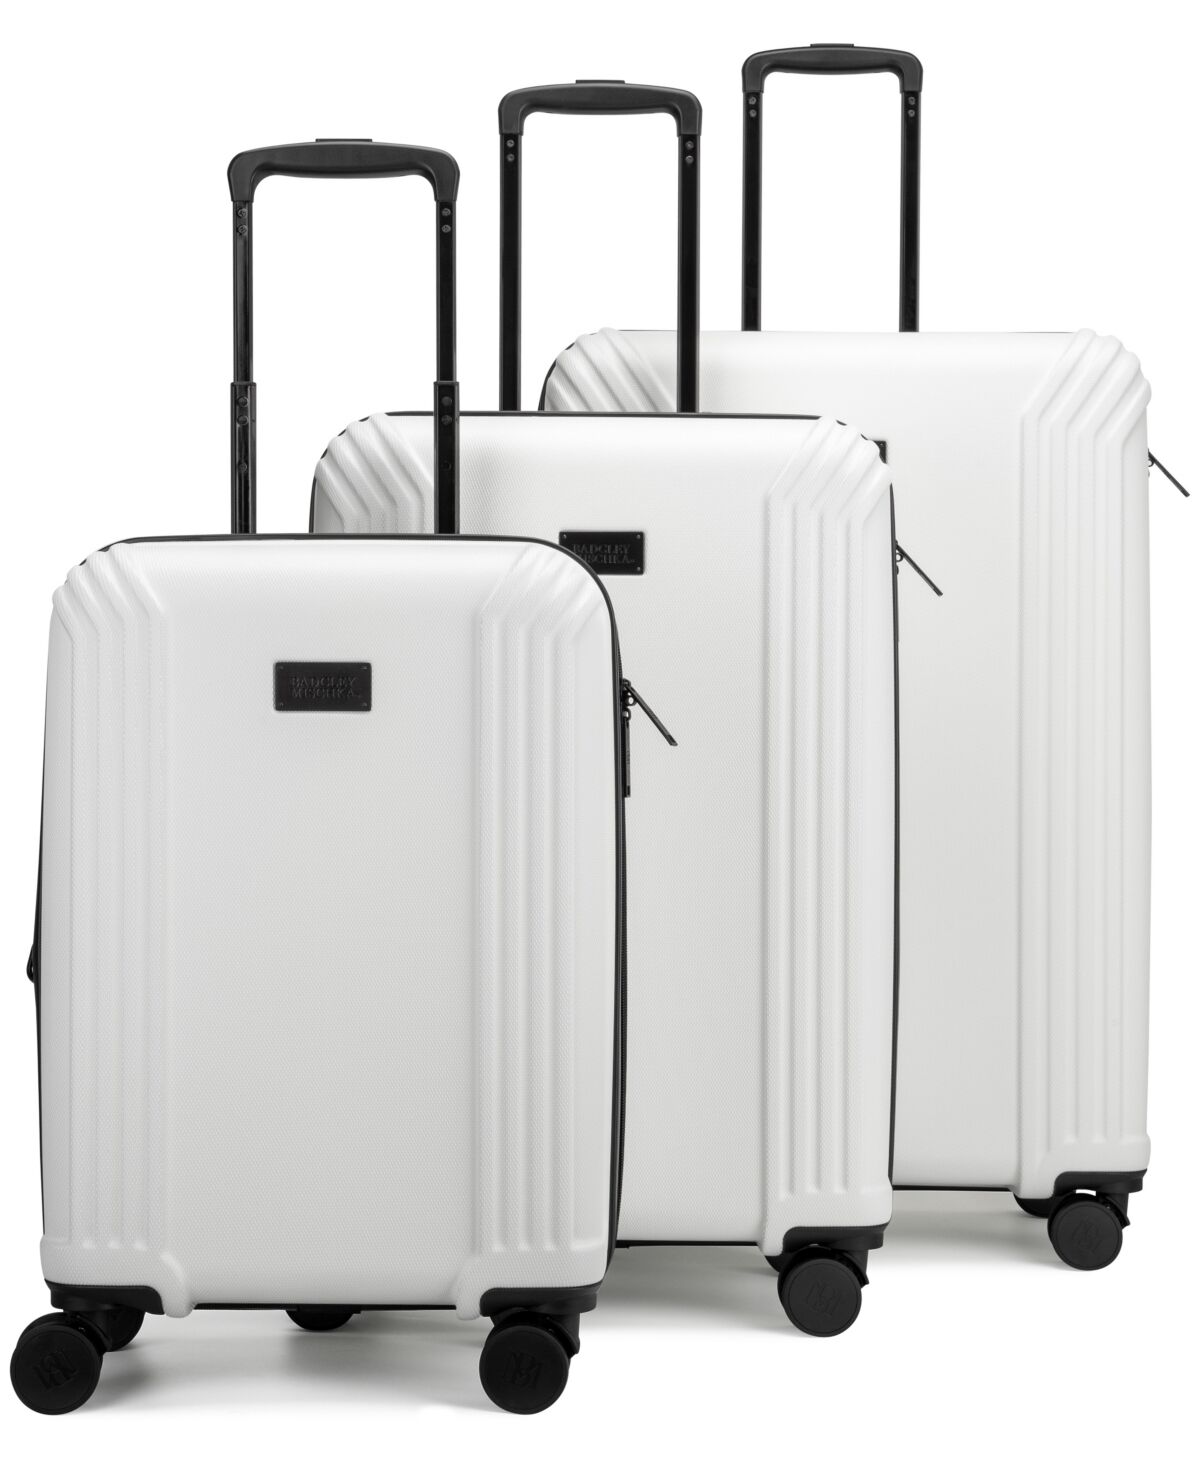 Badgley Mischka Evalyn 3 Piece Expandable Luggage Set - White